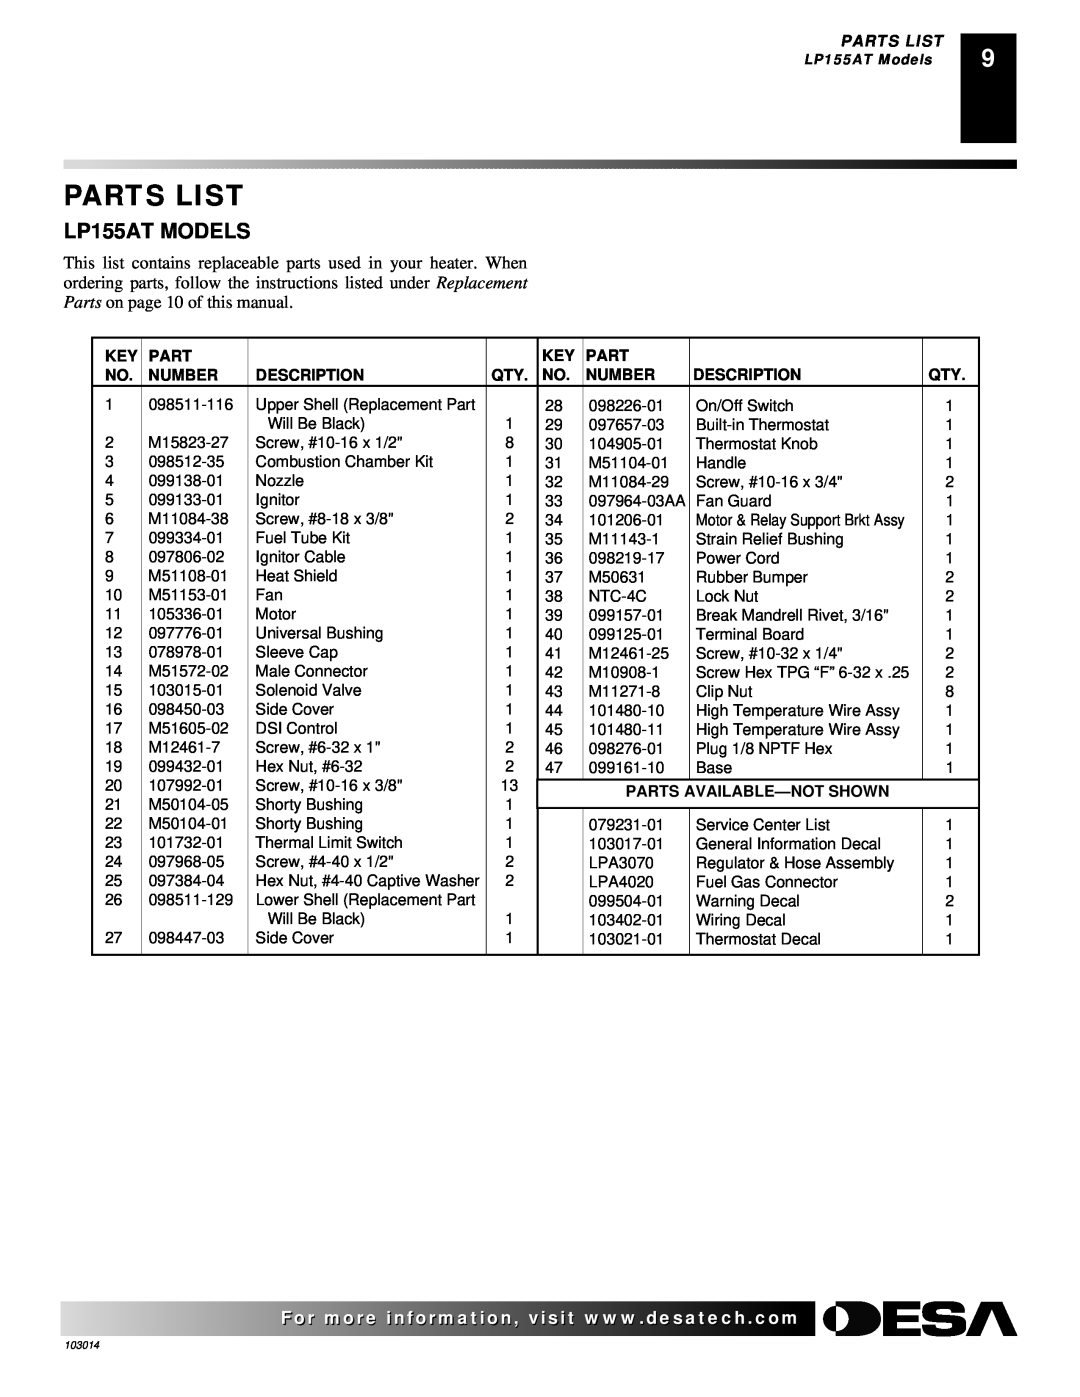 Desa LP155AT owner manual Parts List, Number, Description, Parts Available-Notshown 